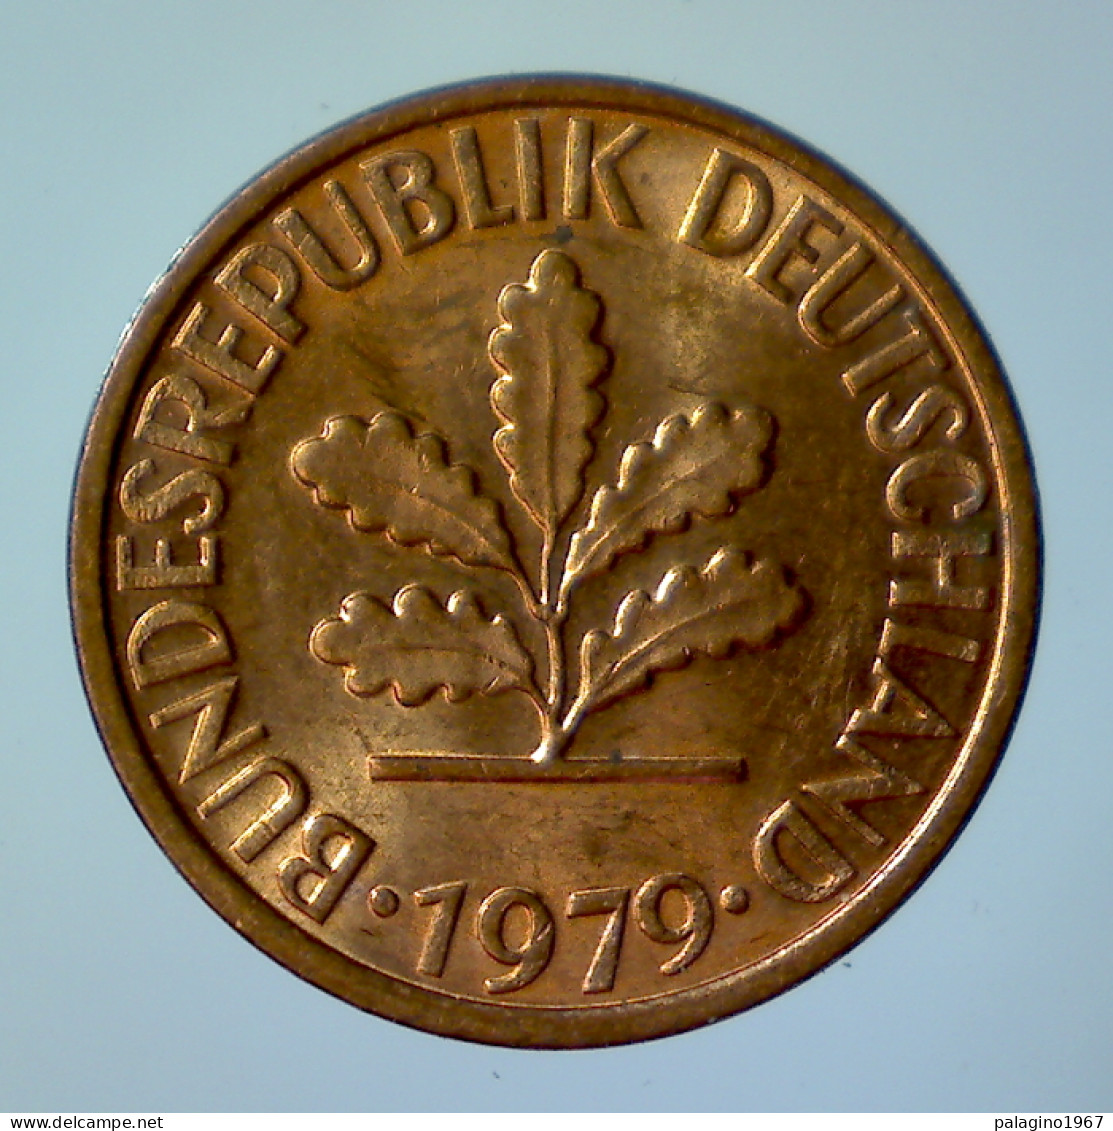 GERMANIA 1 Pfennig 1979 F QFDC  - 1 Pfennig